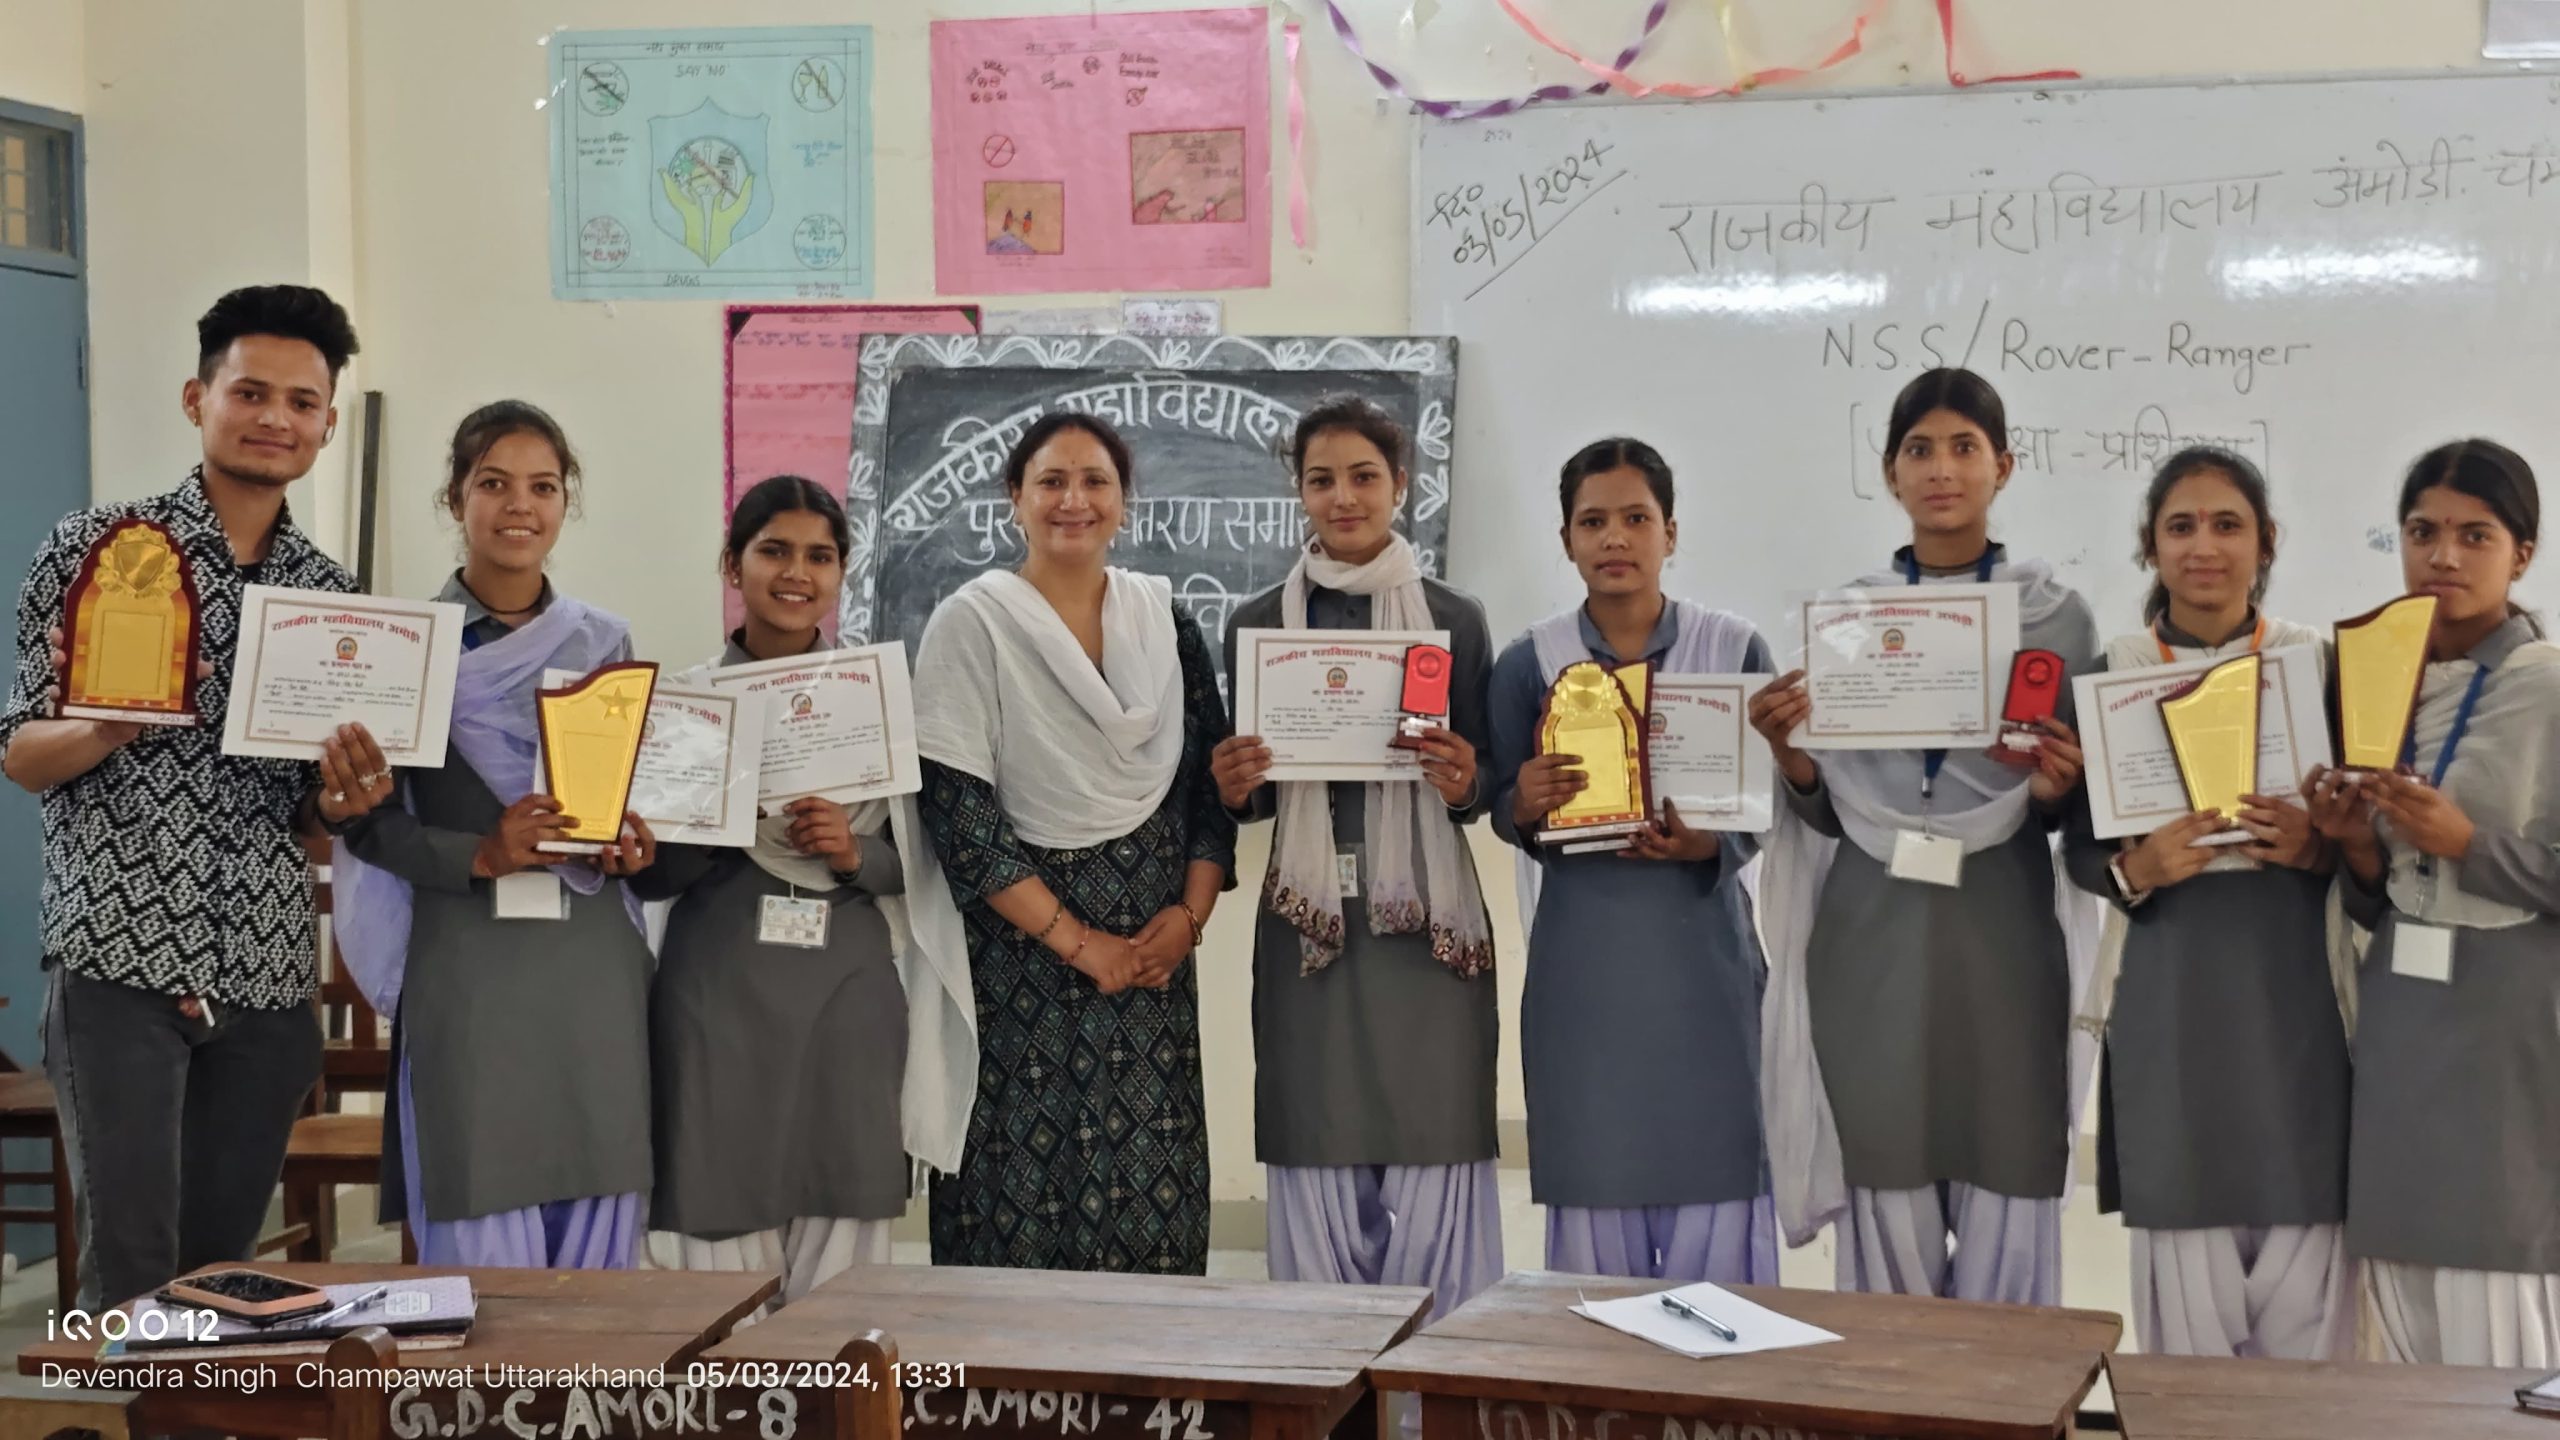 दिनांक 03-05-2024:हिन्दी विभाग परिषदीय गतिविधियों में हिन्दी सामान्य ज्ञान, कविता पाठ प्रतियोगिता में प्रथम, द्वितीय, तृतीय स्थान प्राप्तकर्ता छात्र/छात्राओं को अलंकरण प्रमाणपत्र से सम्मानित किया गया।   डॉ0 रेखा मेहता विभाग प्रभारी